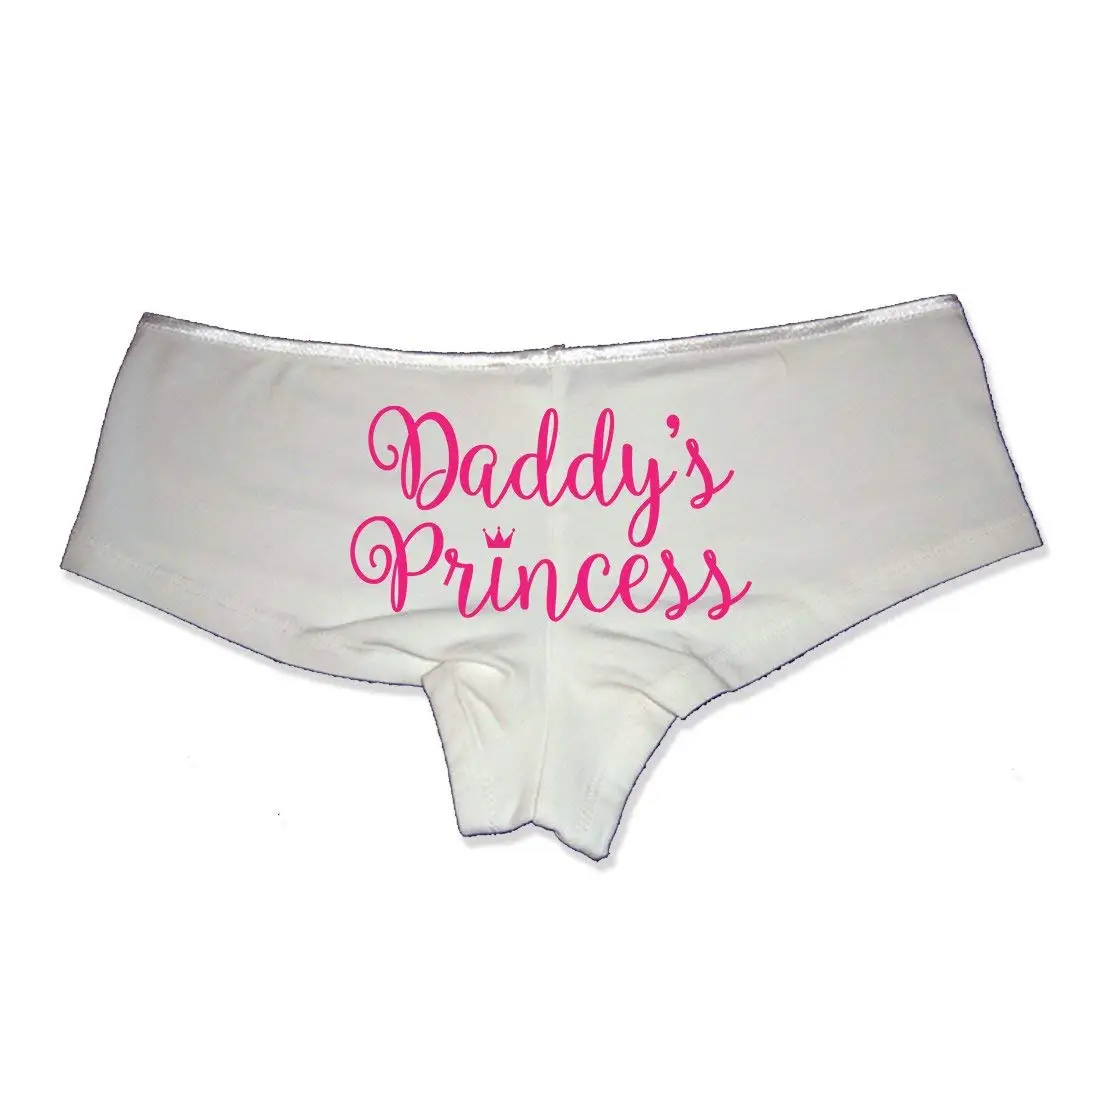 Princess productions panties